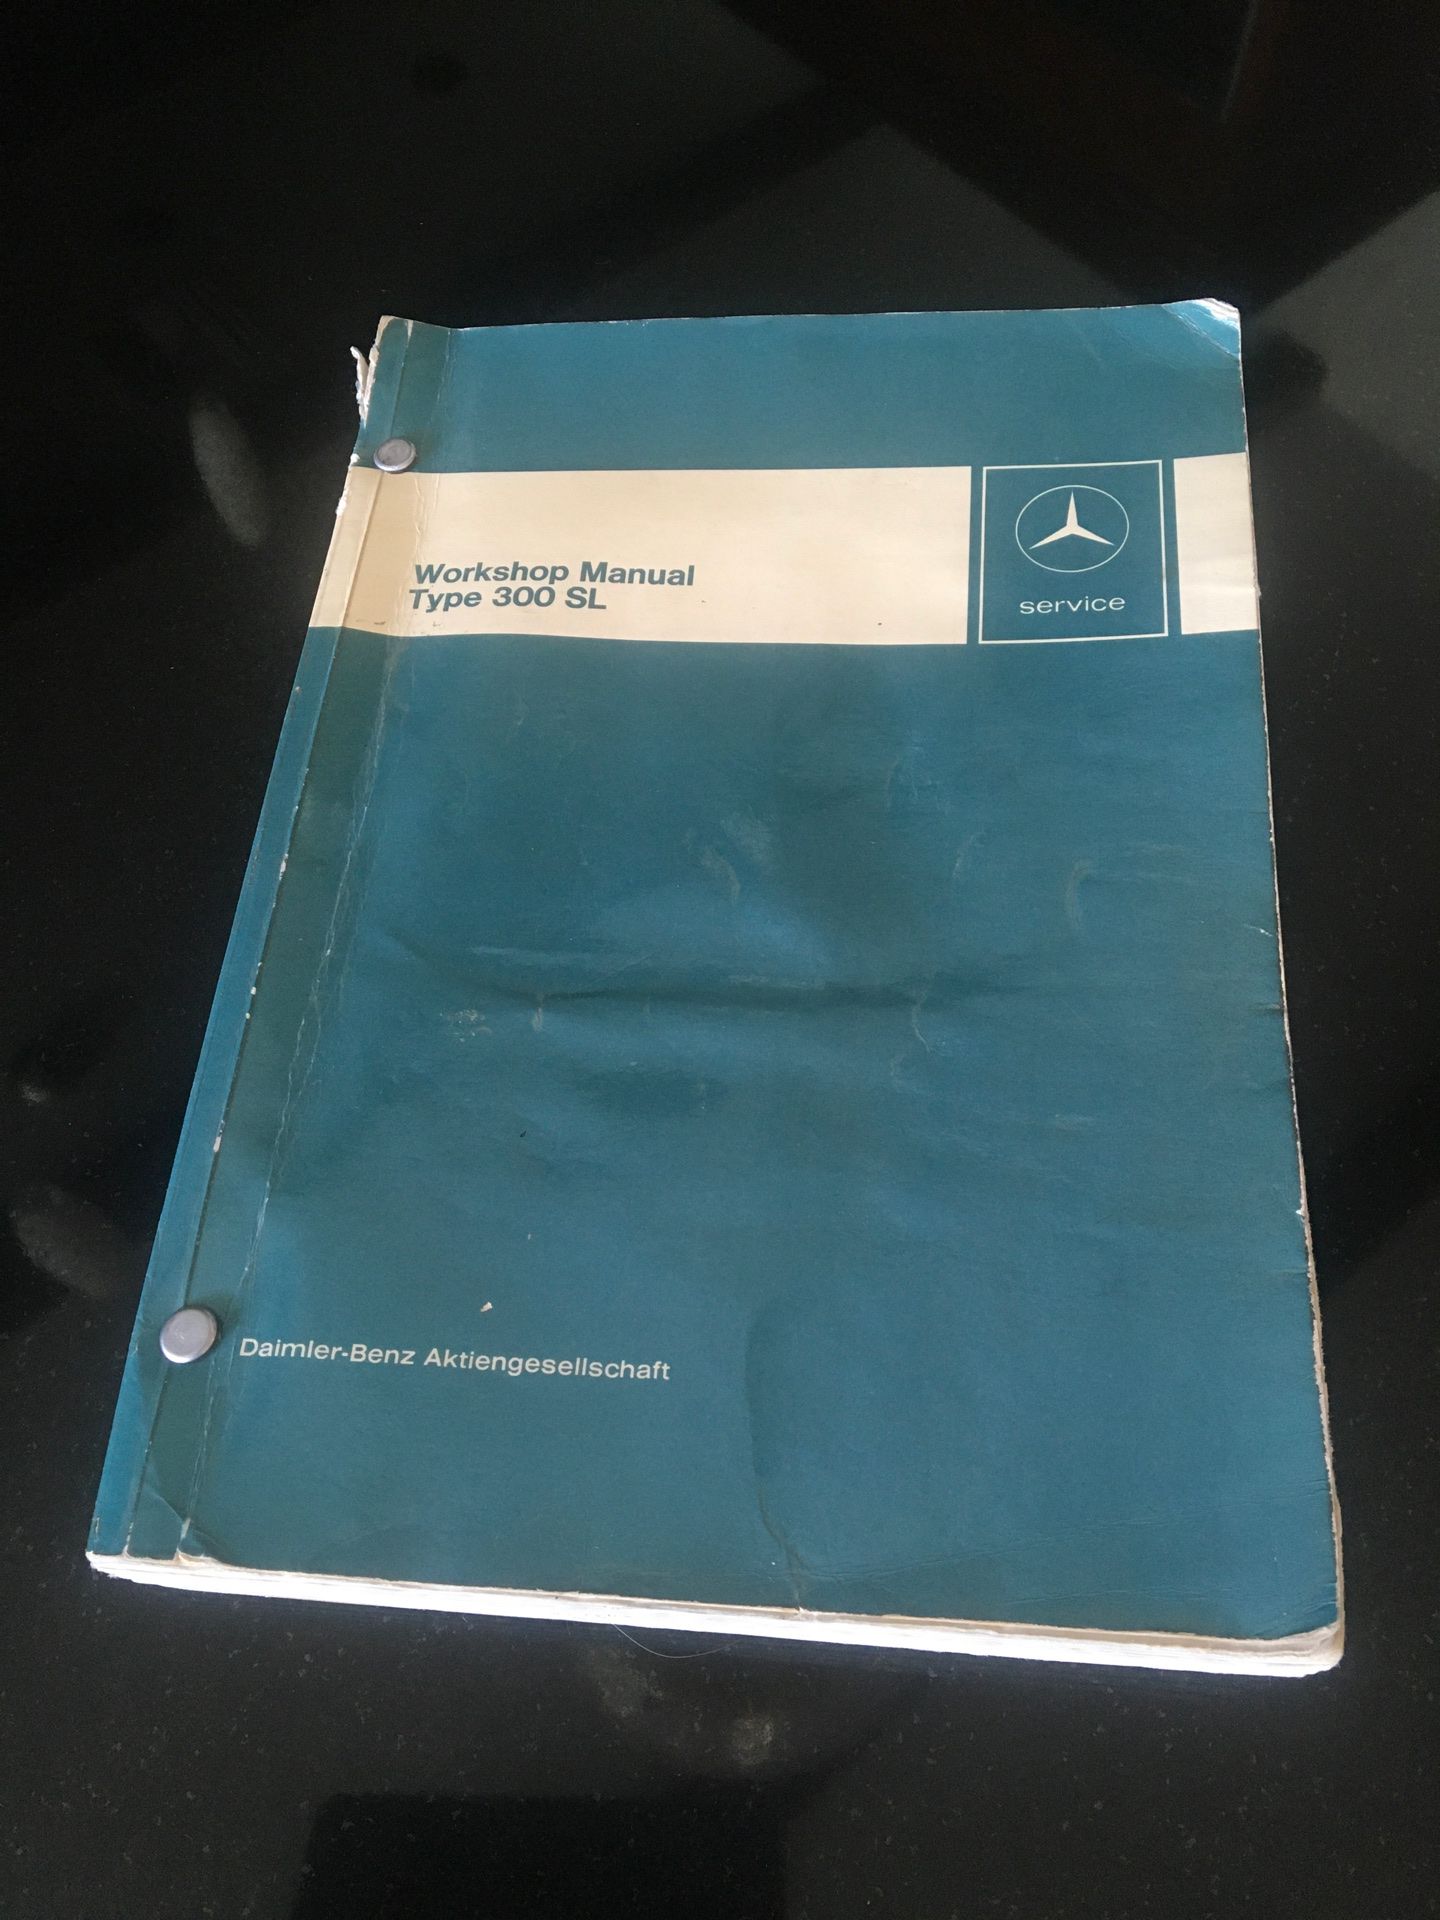 Mercedes Workshop Manual for a 300 SL